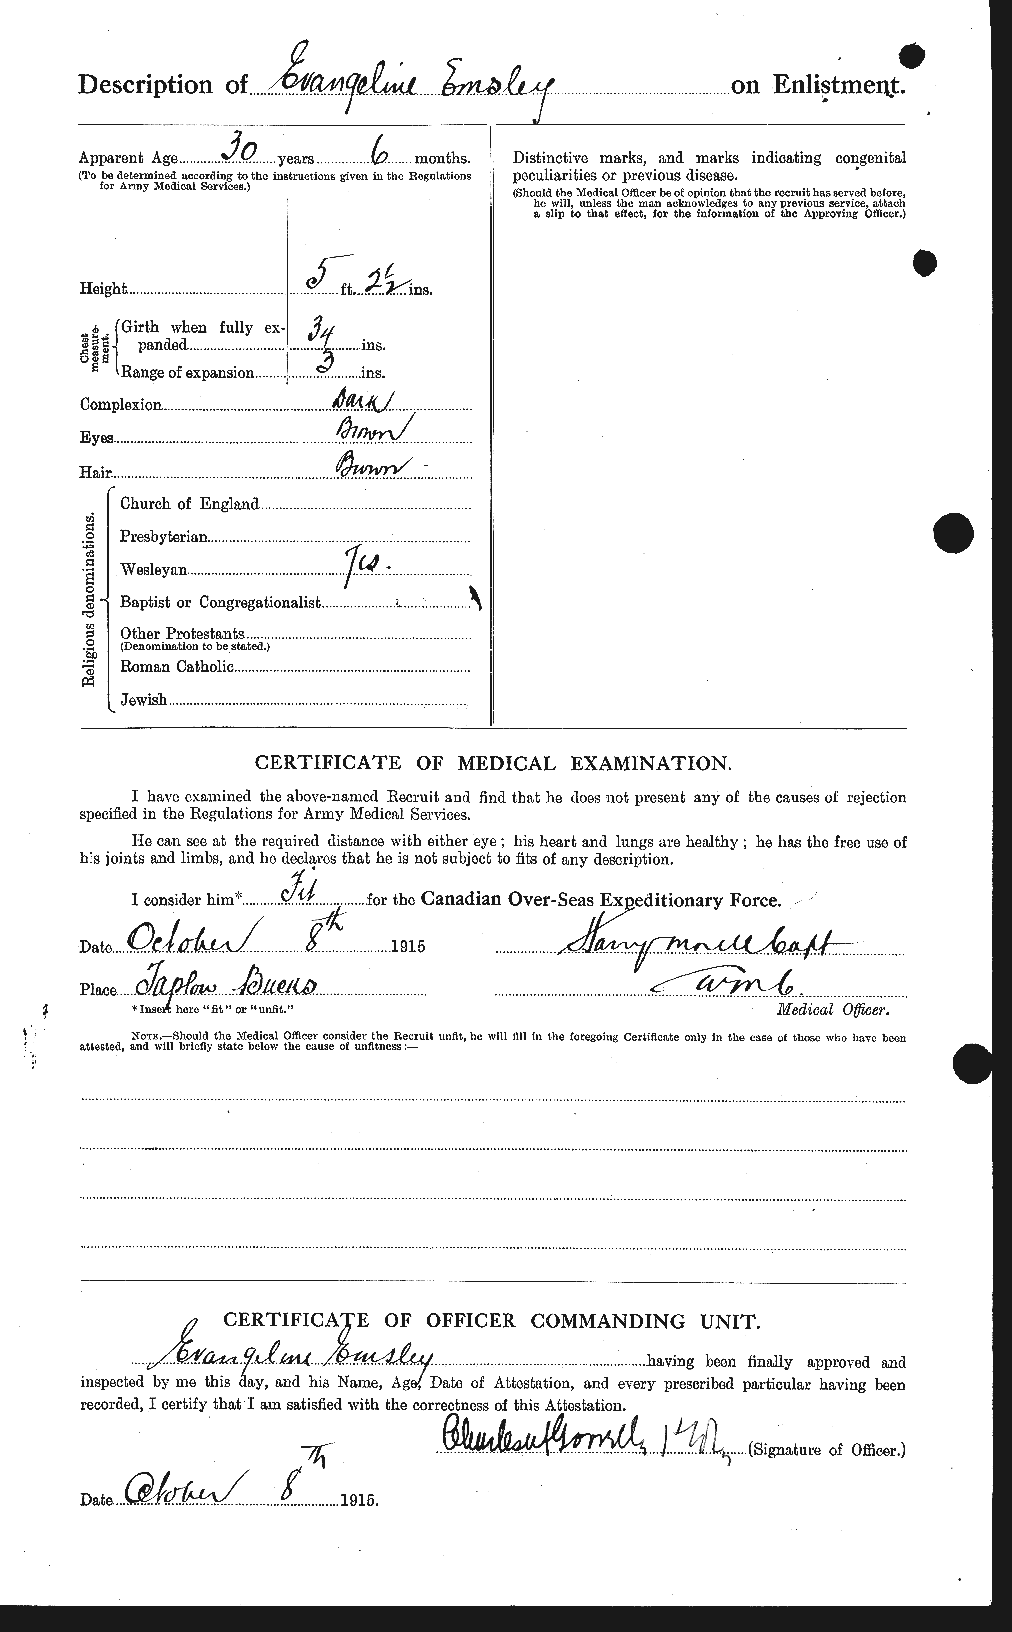 Dossiers du Personnel de la Première Guerre mondiale - CEC 313849b